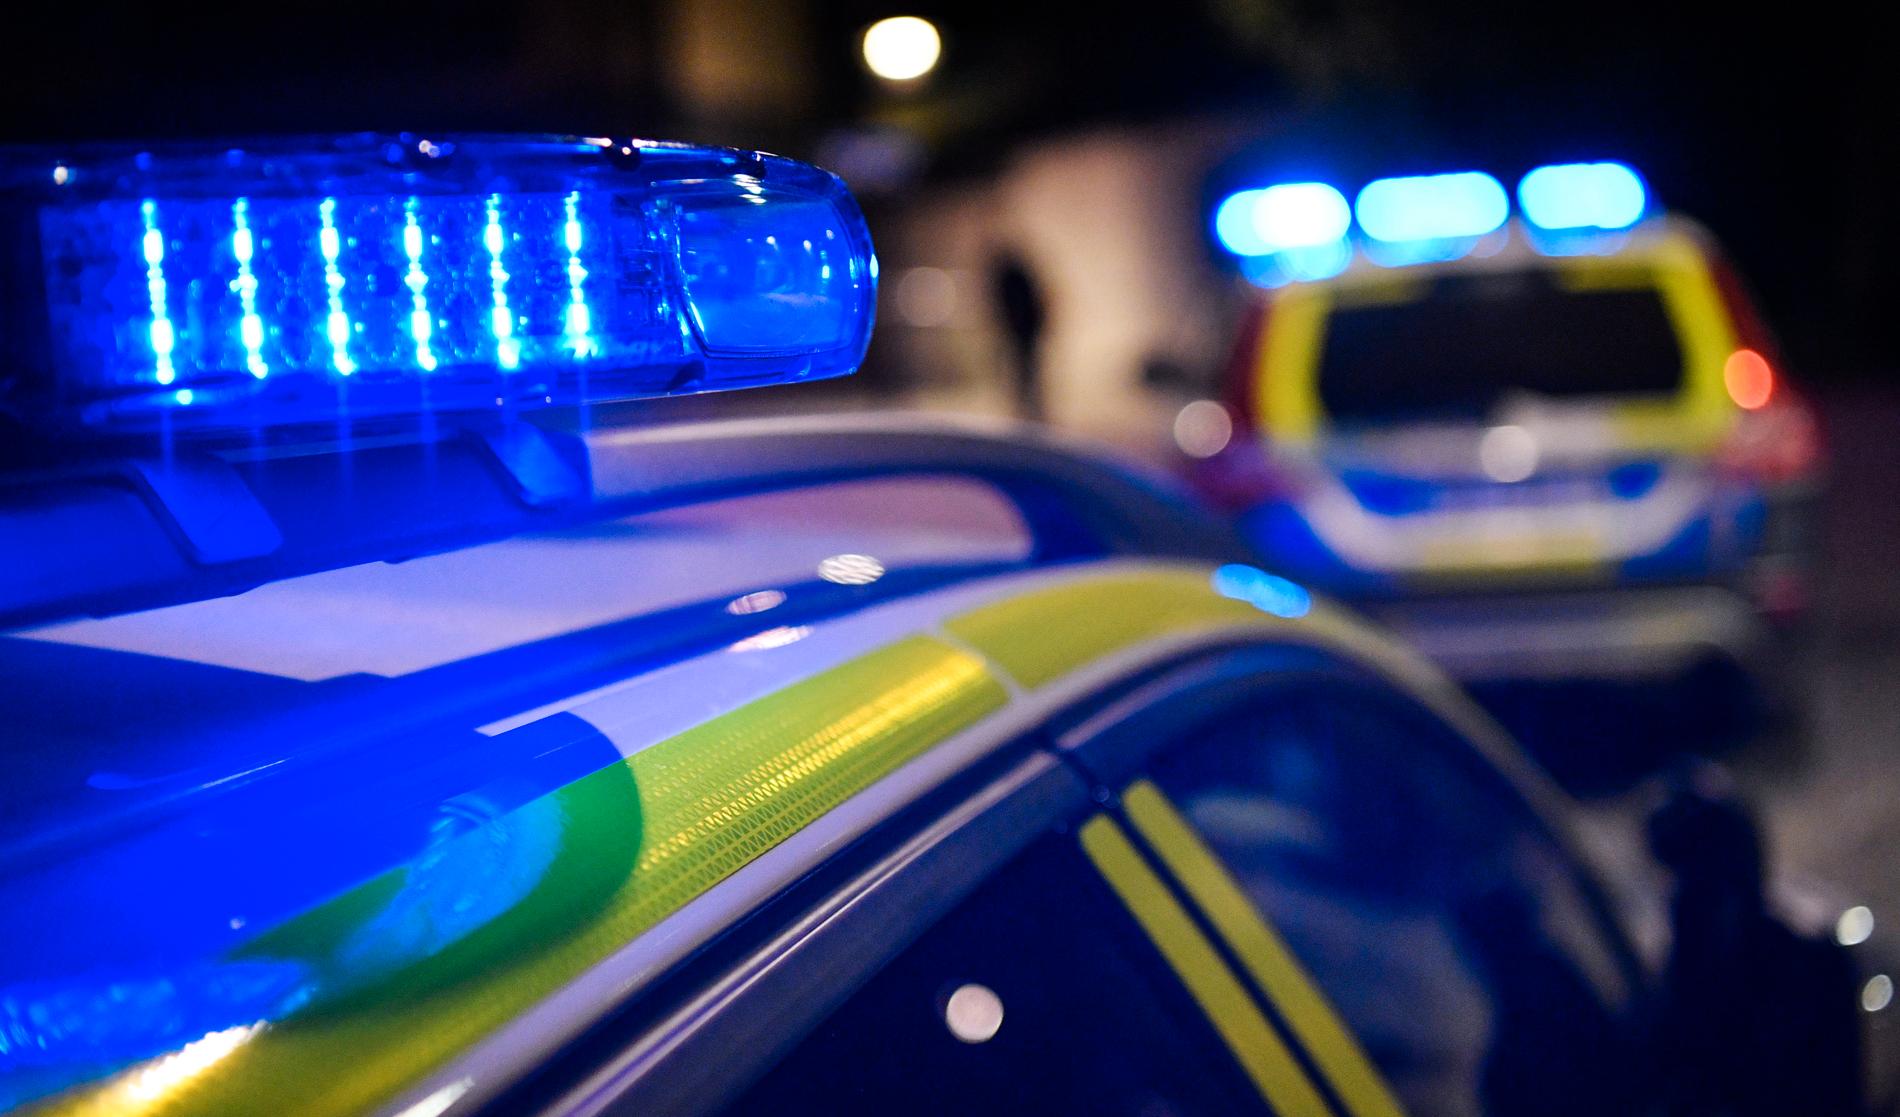 Polis i bland annat Örebro och Kristianstad besköts under måndagen med fyrverkerier. Arkivbild.